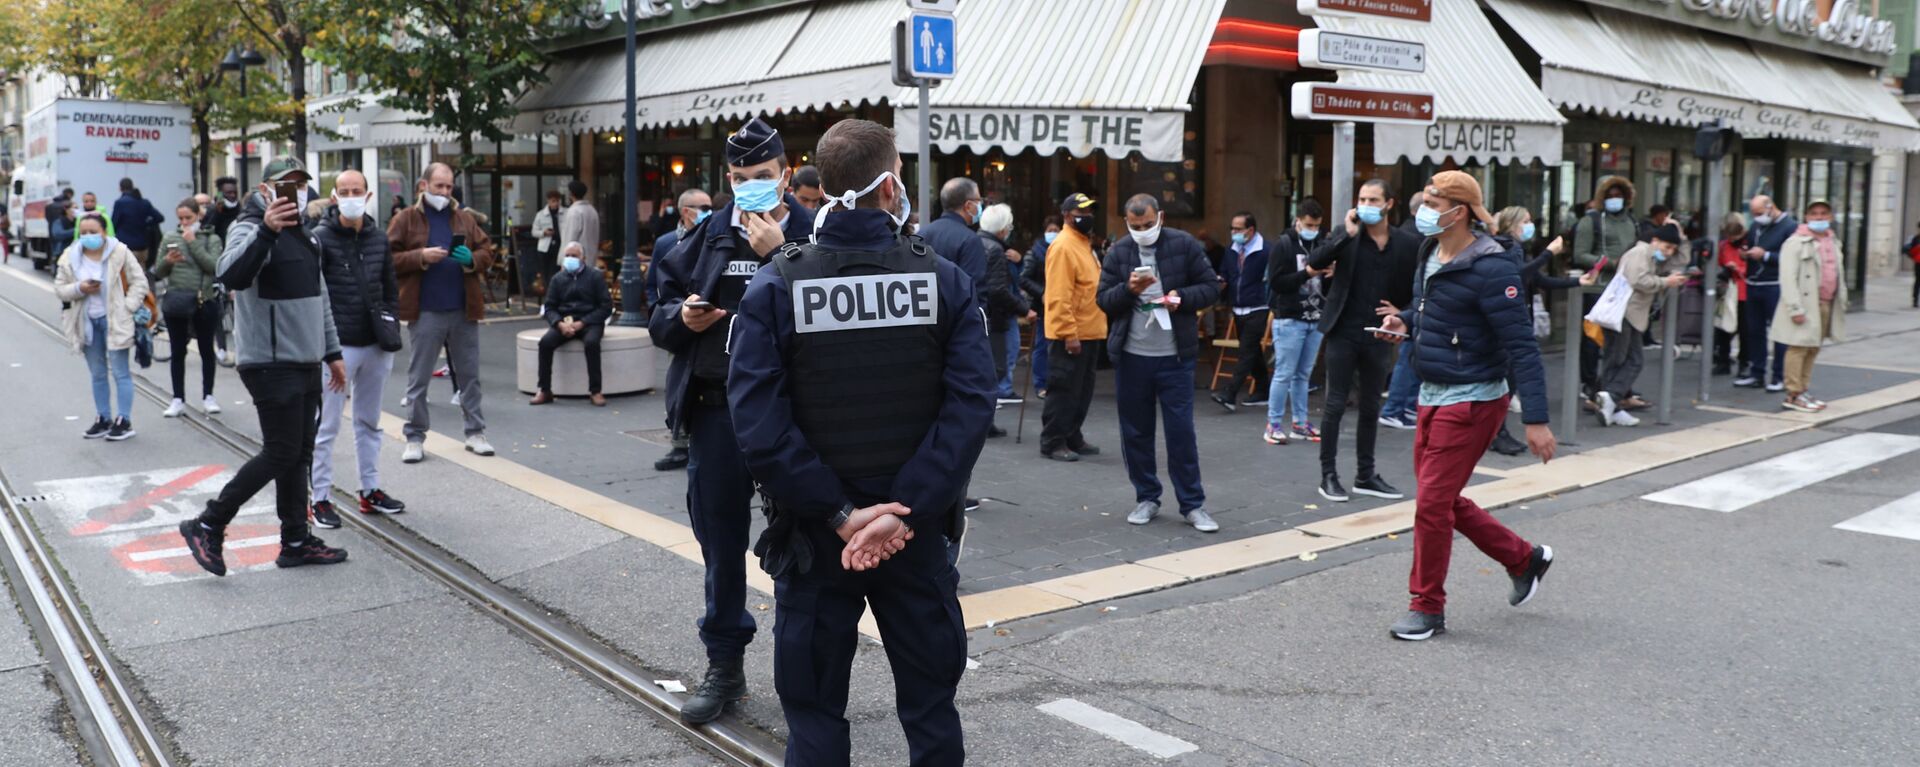  الشرطة الفرنسية في موقع هجوم طعن بالسكين أمام كاتدرائية نوتردام في مدينة نيس، فرنسا 29 أكتوبر 2020 - سبوتنيك عربي, 1920, 01.01.2021